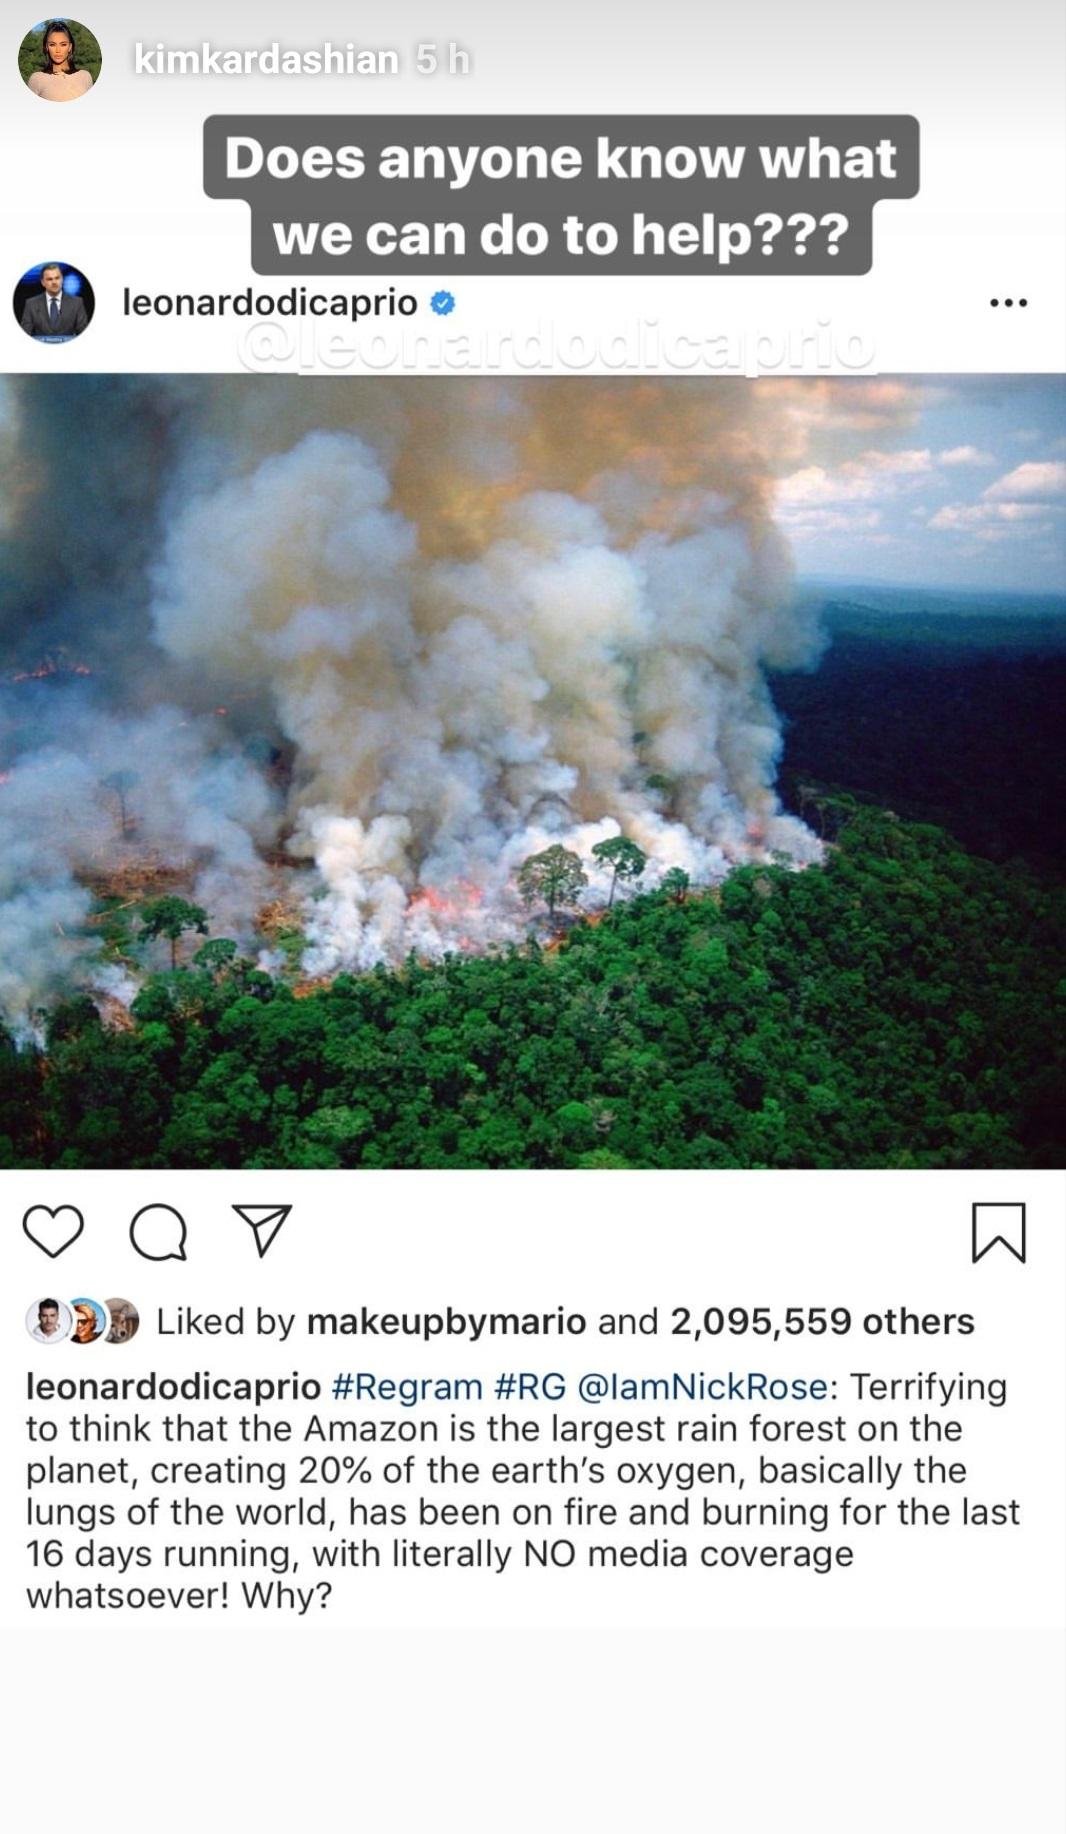 حريق غابات الأمازون الامازون غابة نيران برازيل النجمات